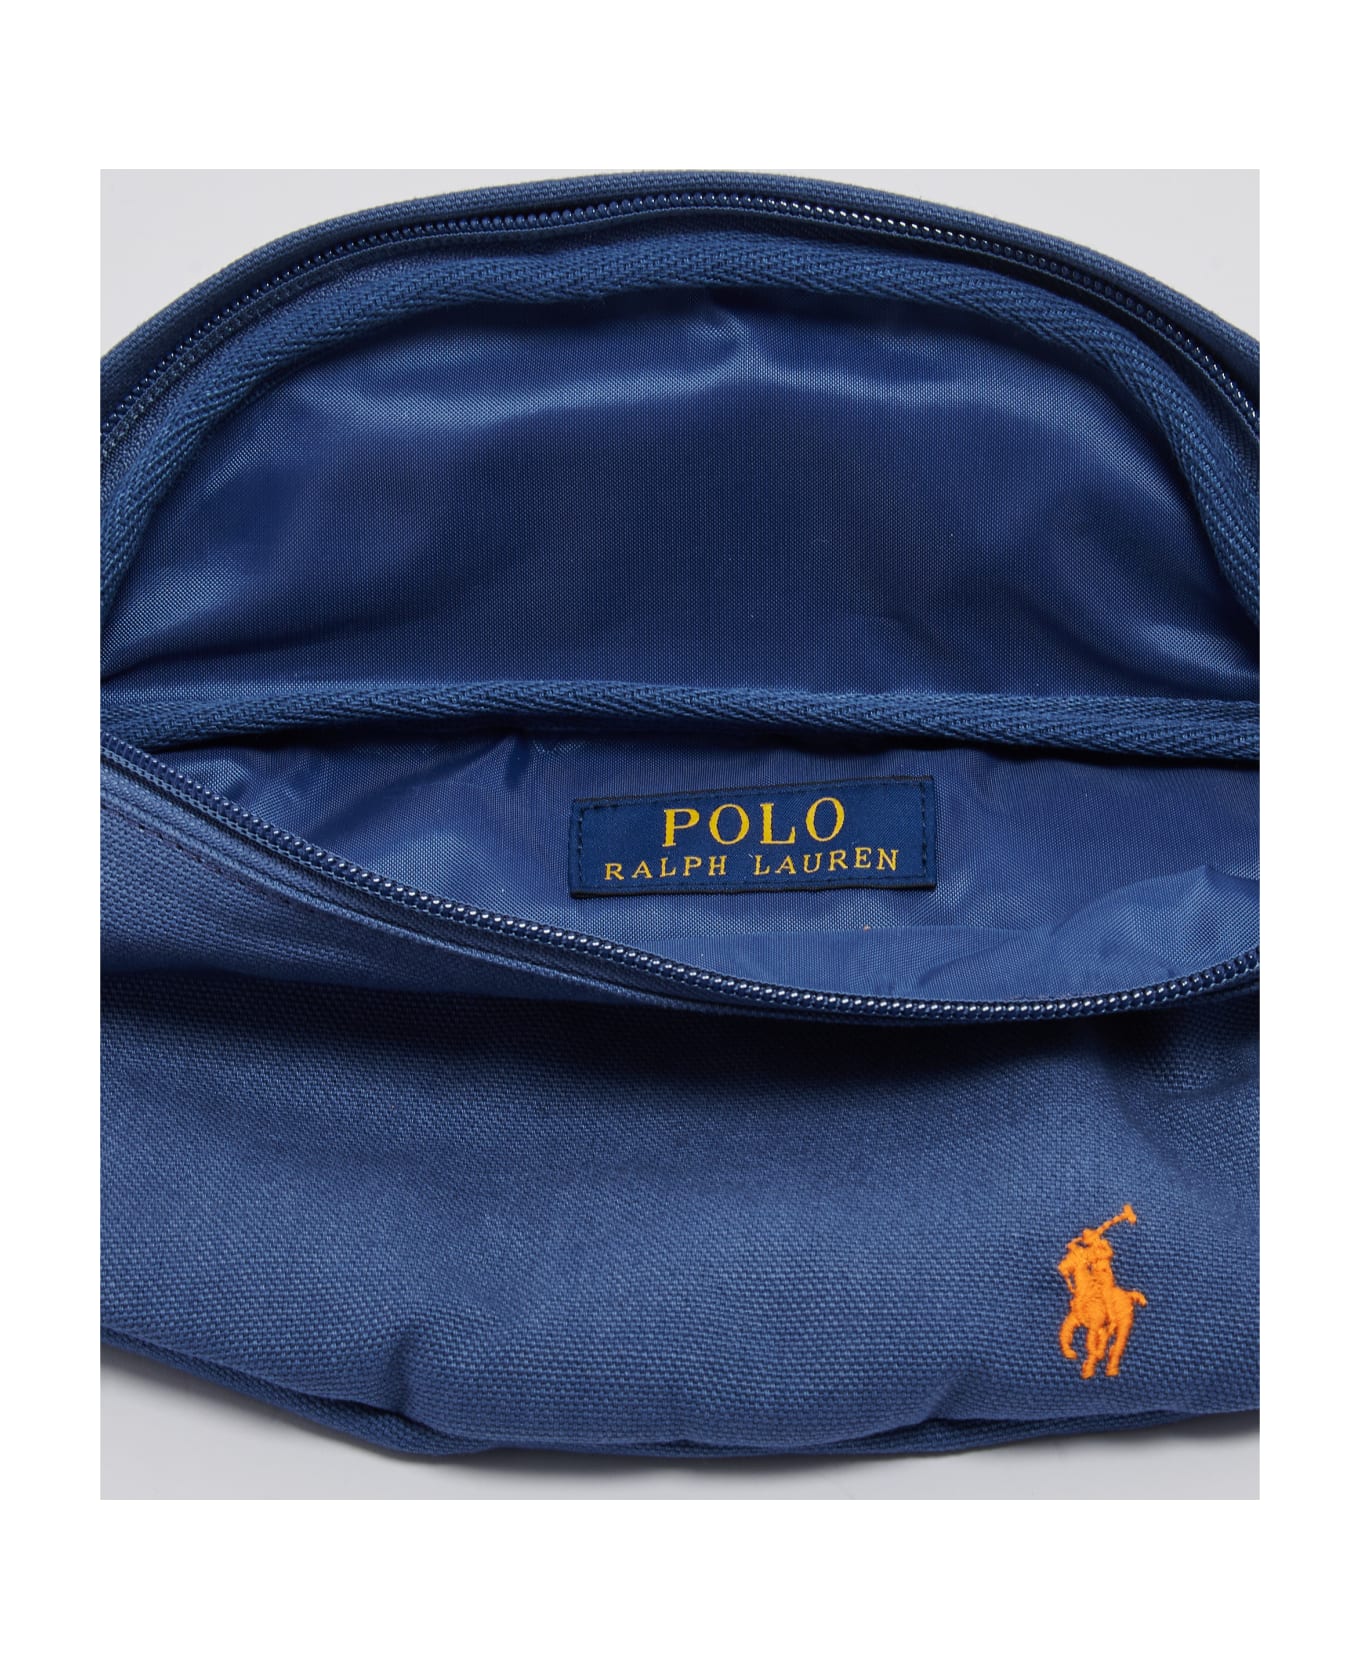 Polo Ralph Lauren Waist Bag-medium Shoulder Bag - INDACO ベルトバッグ